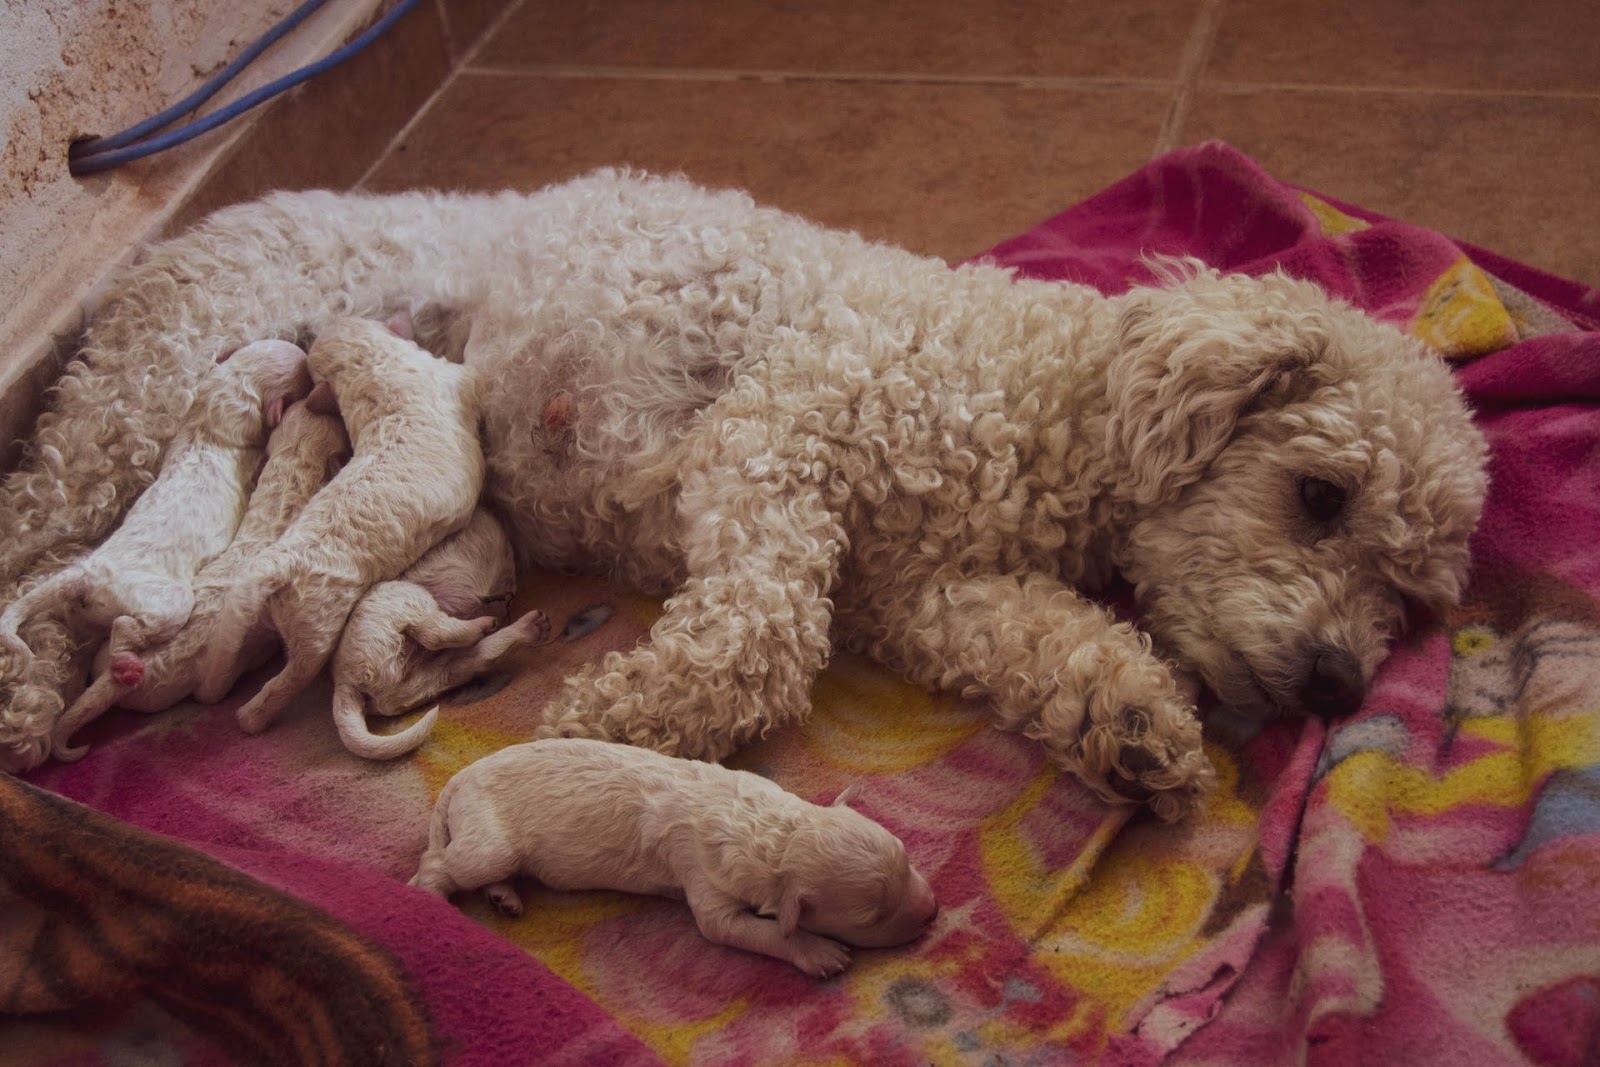 A mother dog nursing a litter of newborn puppies